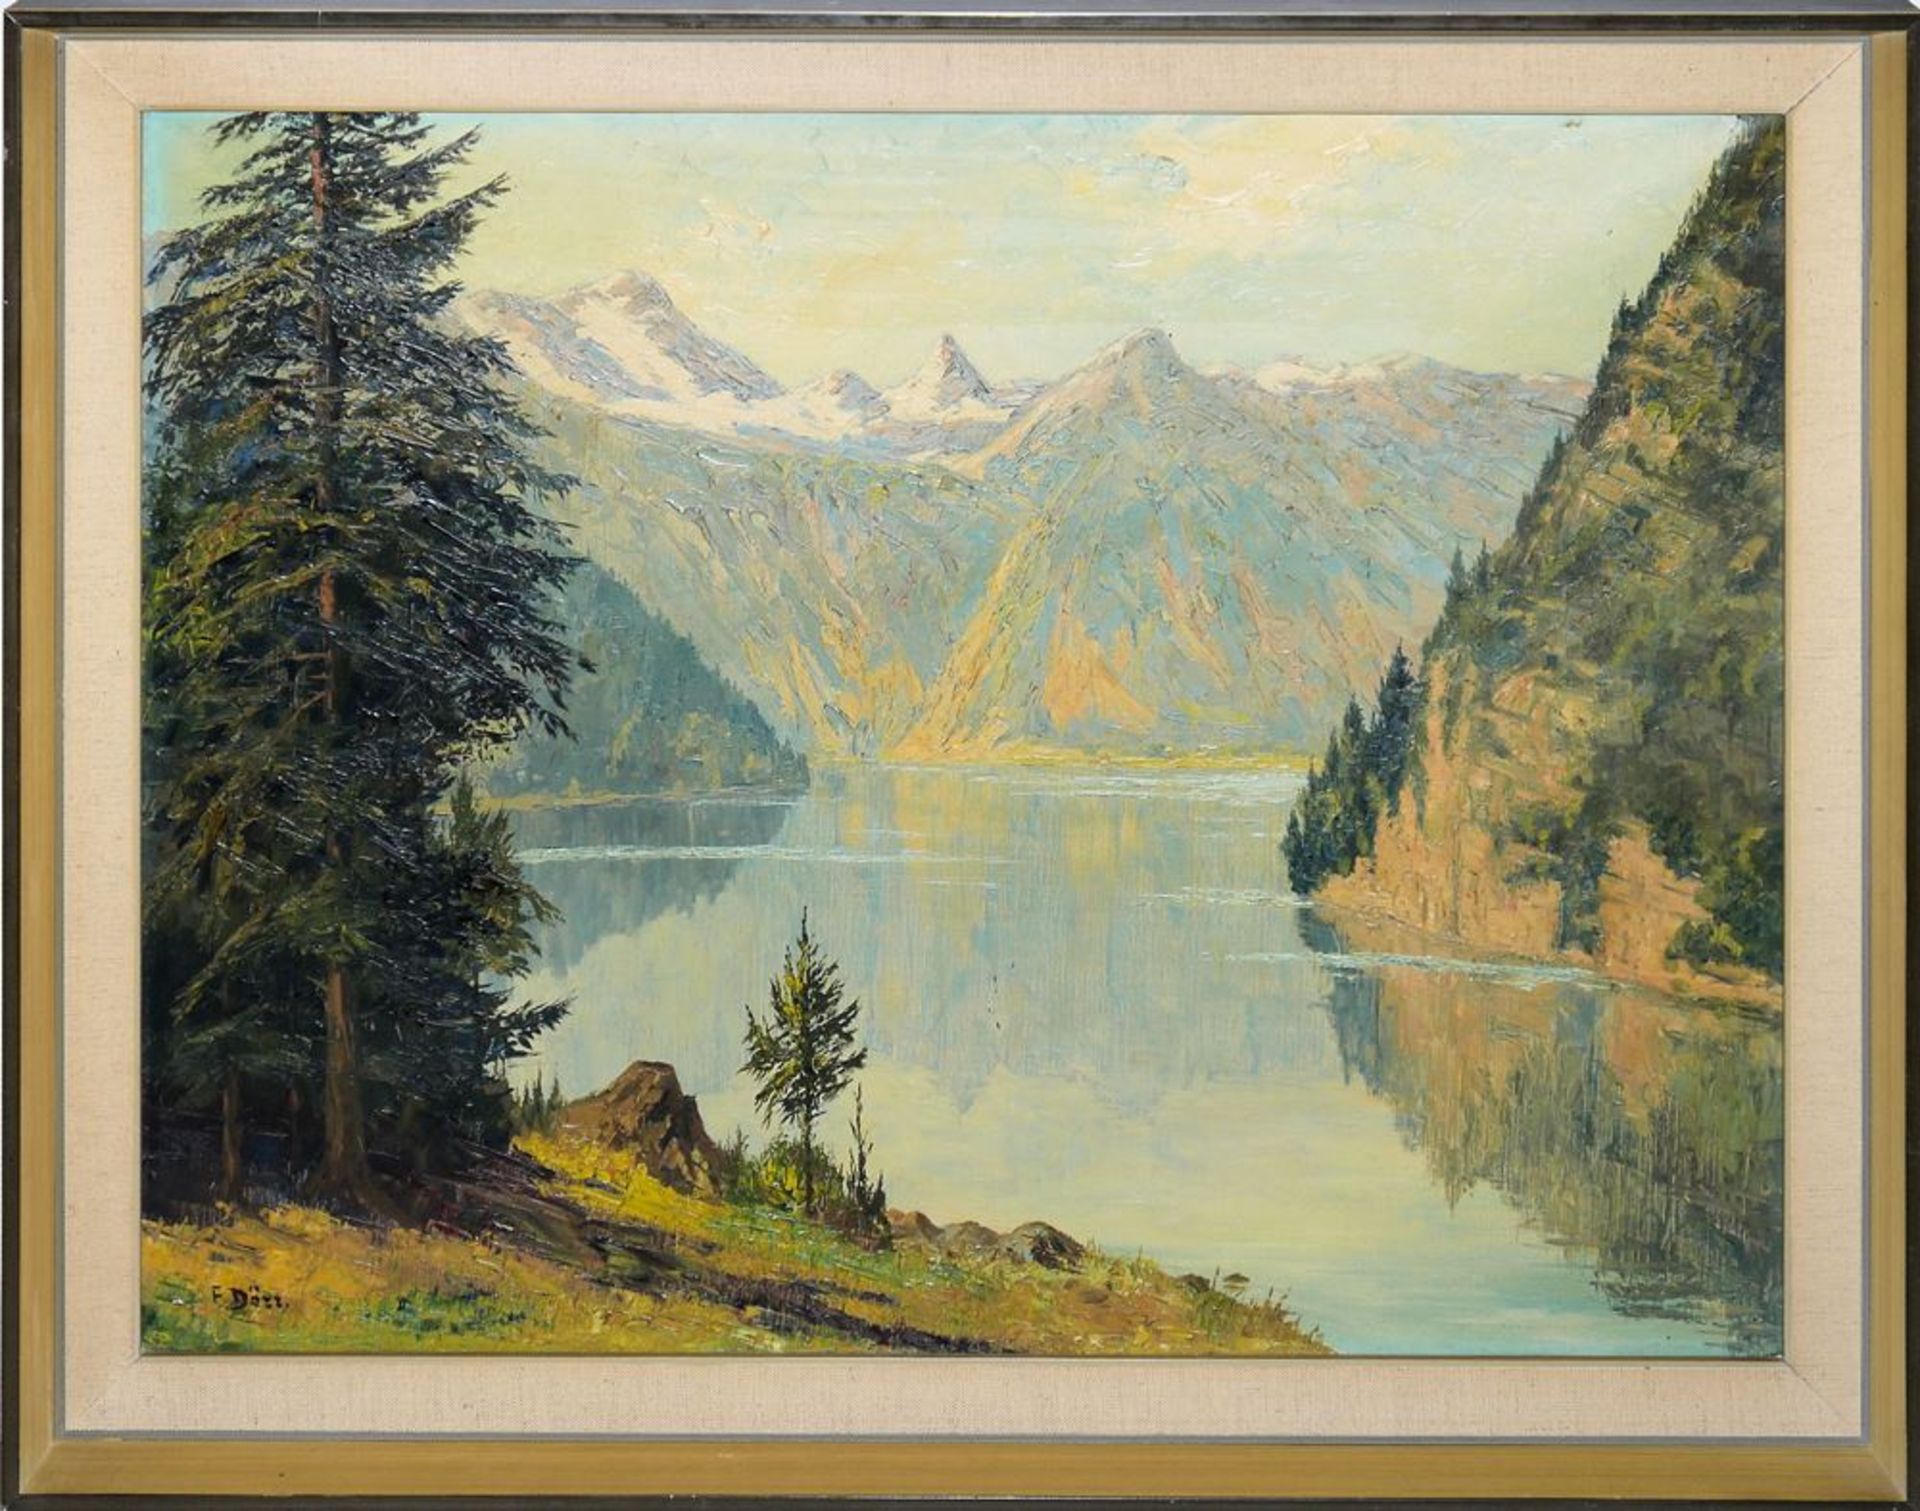 6x badische Künstler bzw. Landschaften, 1900 - Mitte 20. Jh., 6 Ölgemälde, alle gerahmt